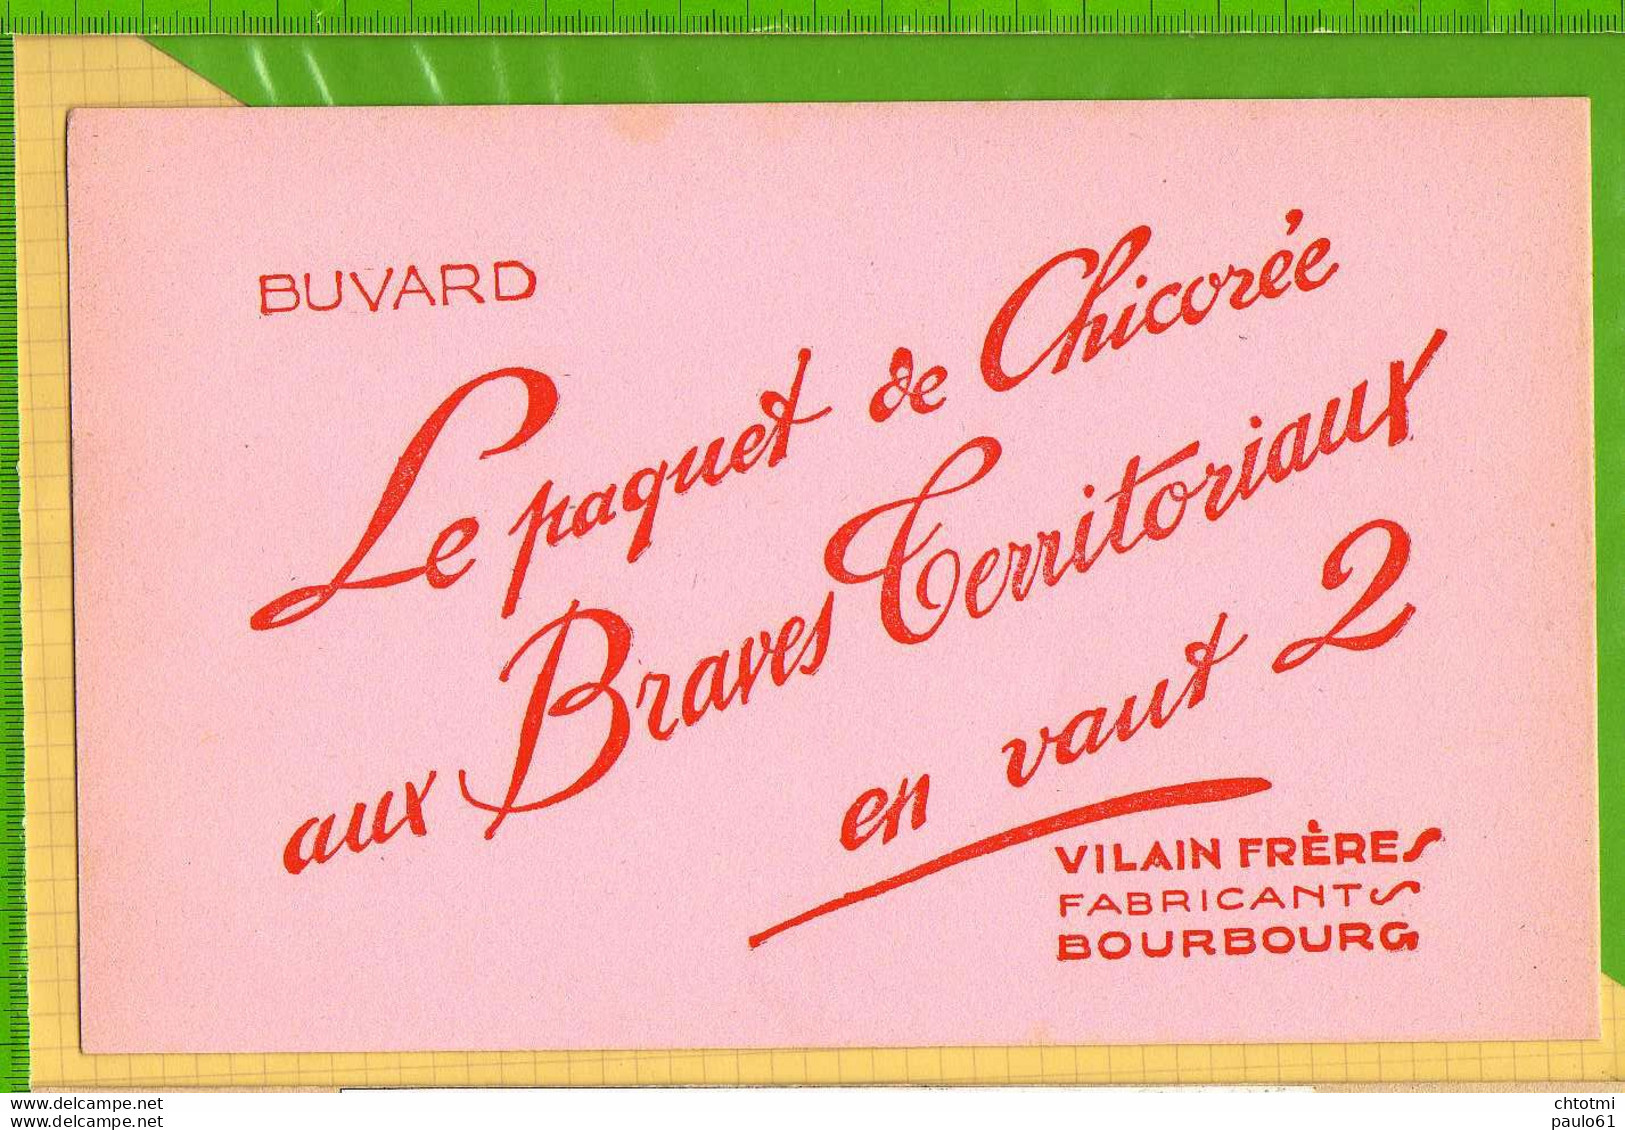 Buvard & Blotting Paper : Le Paquet De Chicorée AUX BRAVES TERRITORIAUX  En Vaut 2 VILAINS FRERES  BOURBOURG - Coffee & Tea